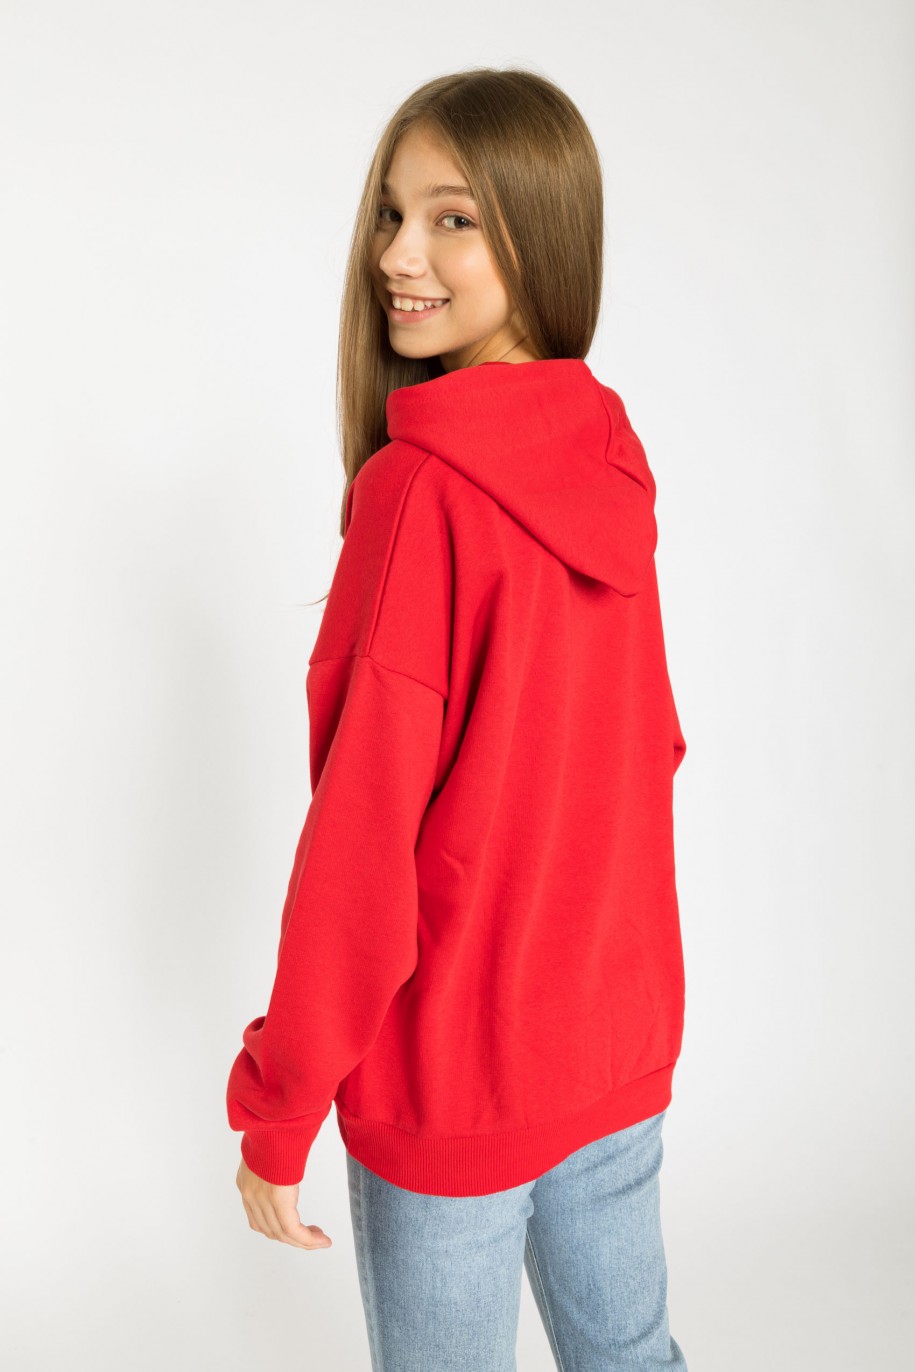 Czerwona bluza dresowa z kapturem ze świątecznym nadrukiem - 38303